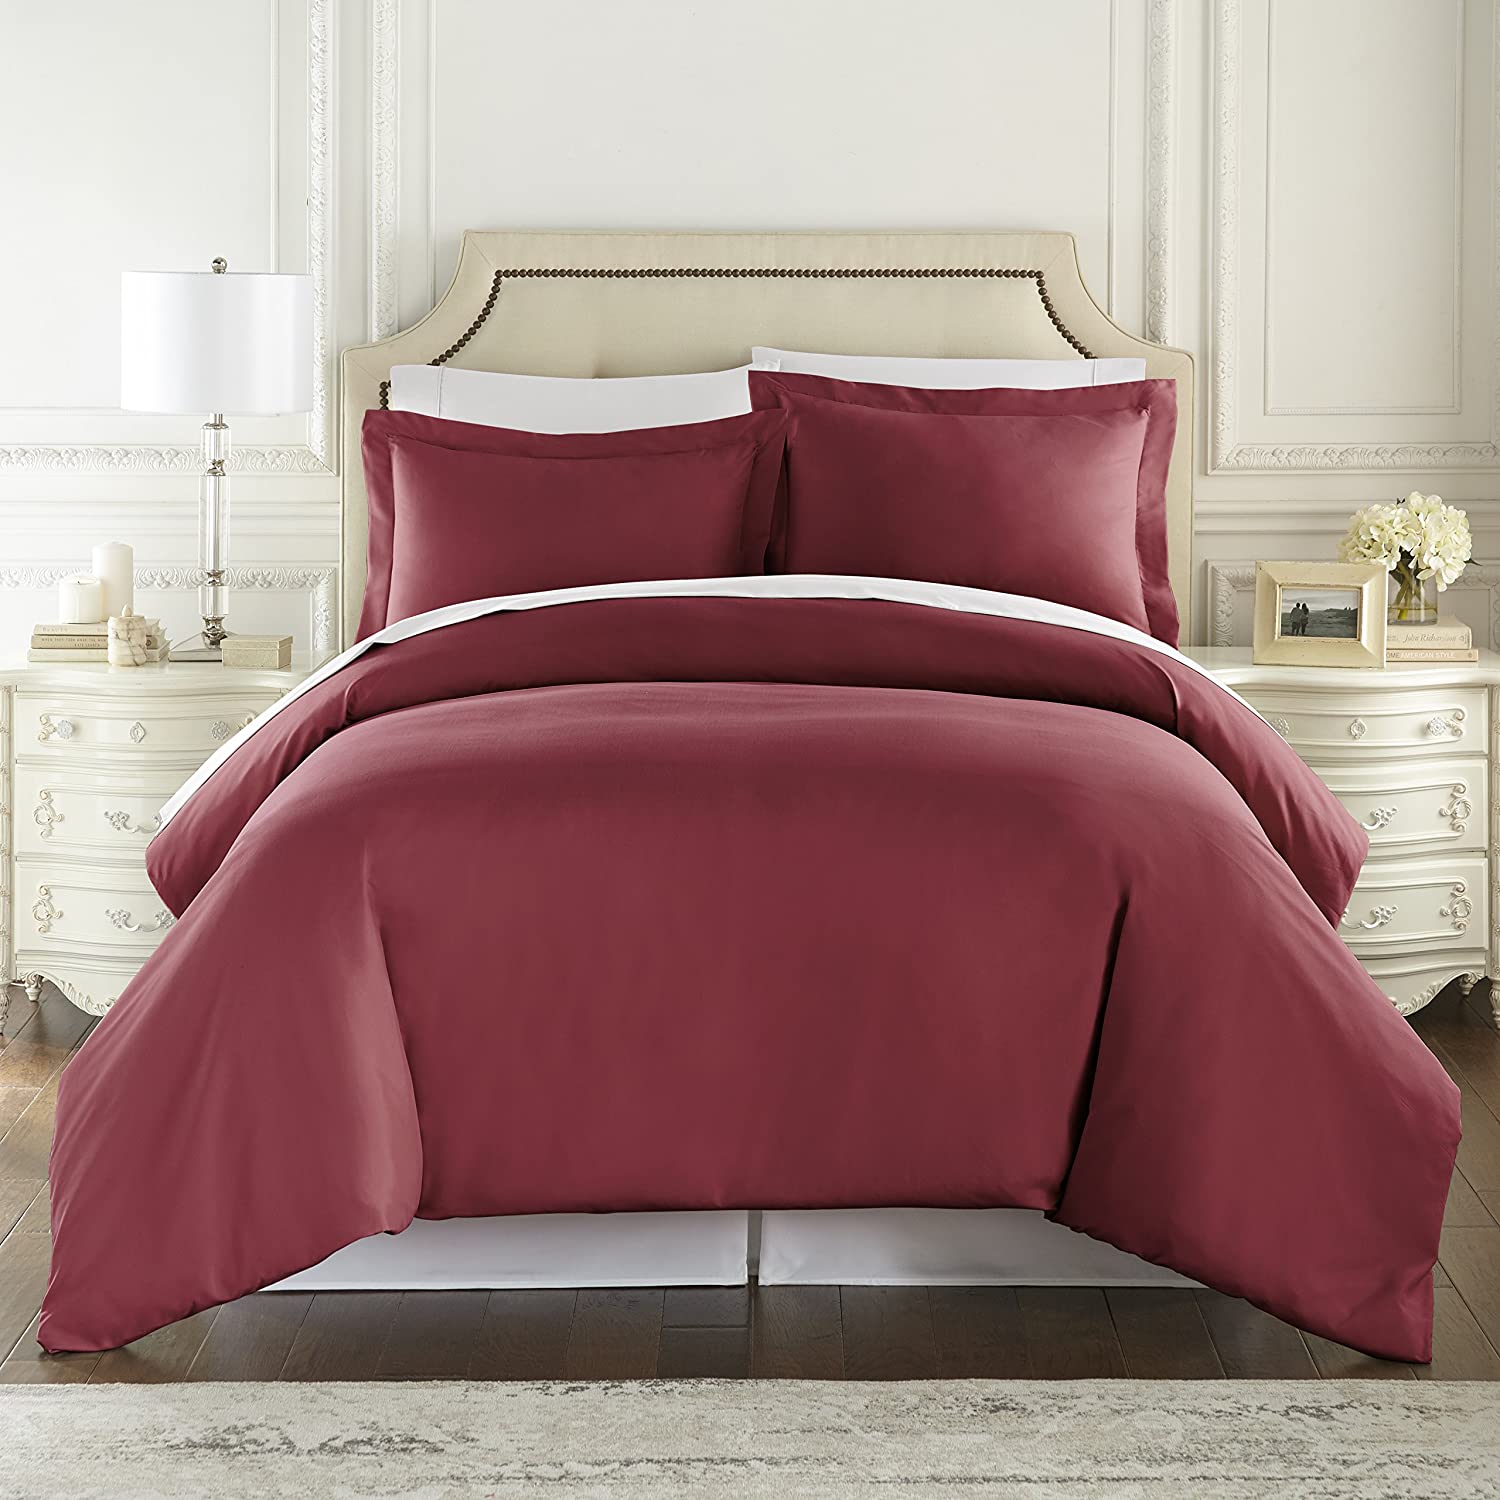 Danjor Linens Easy Care Bed Sheets